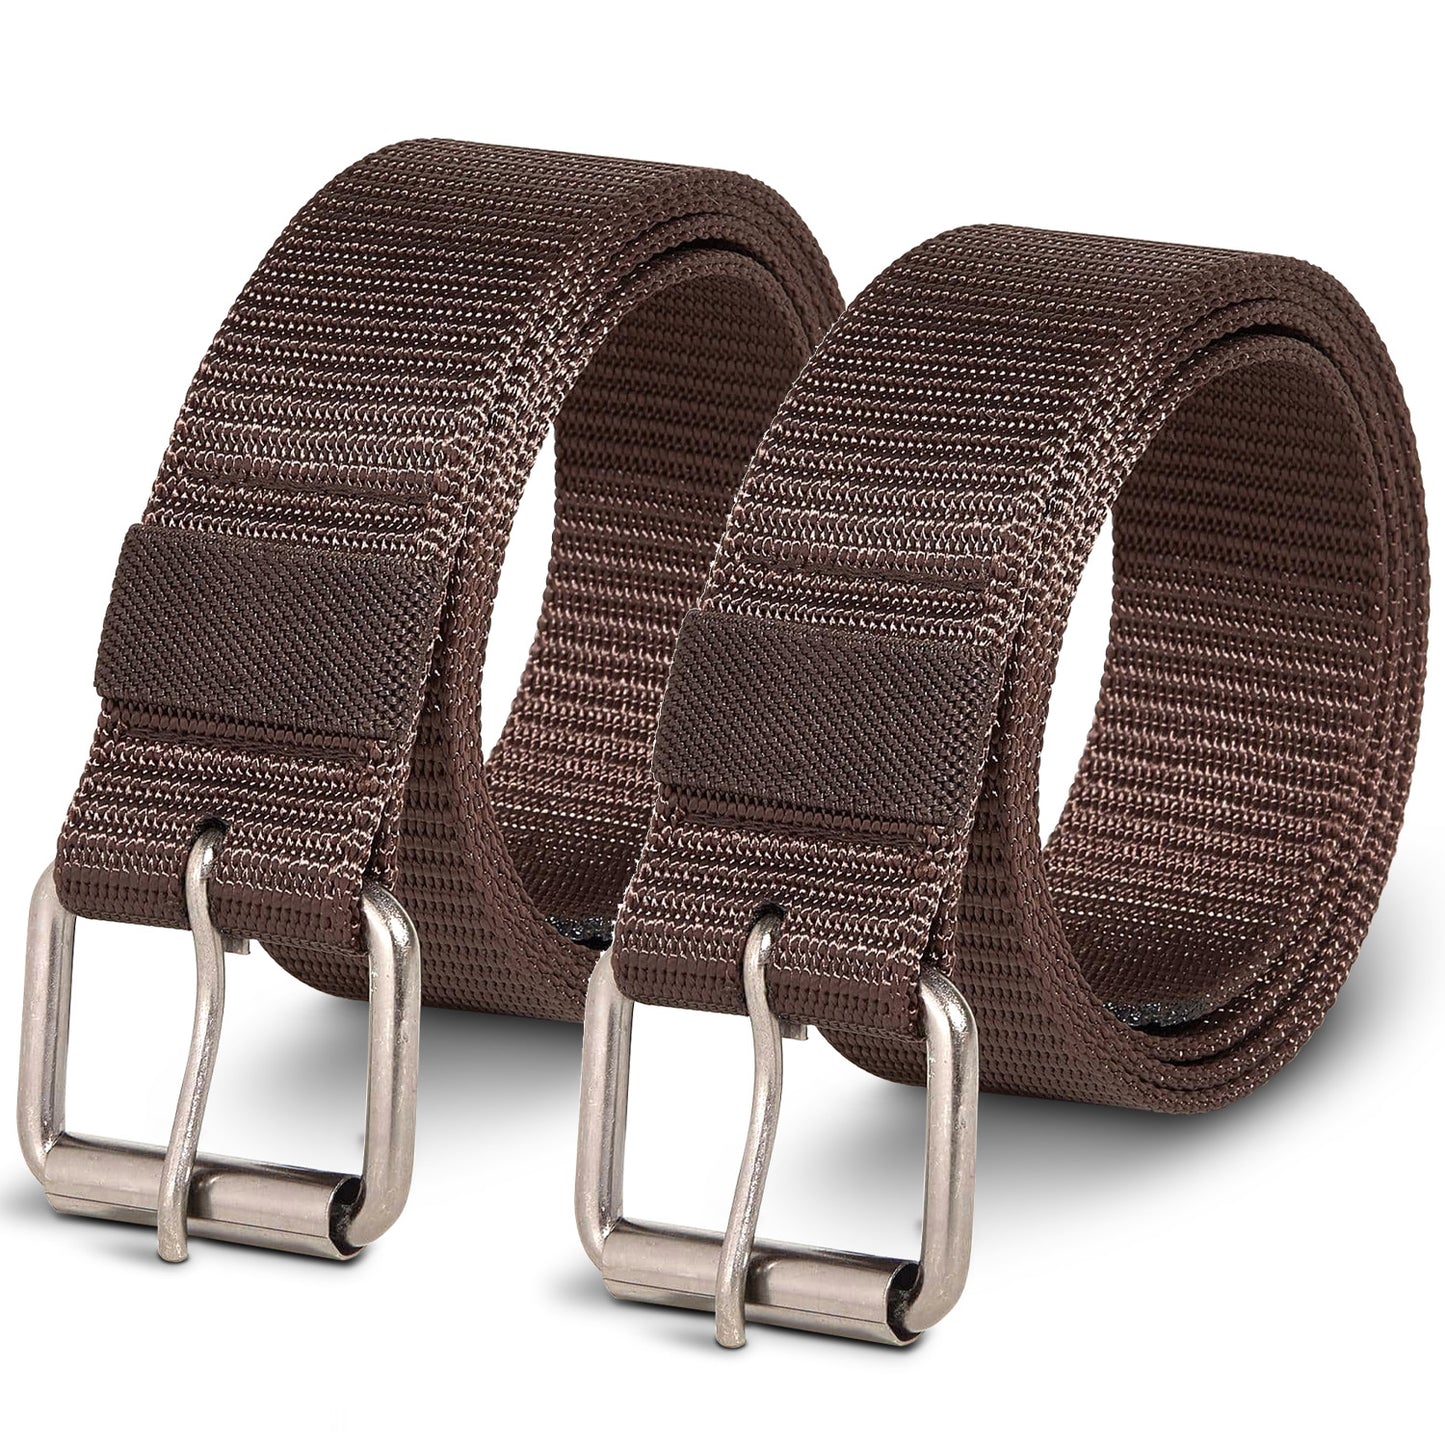 elastic belts for men